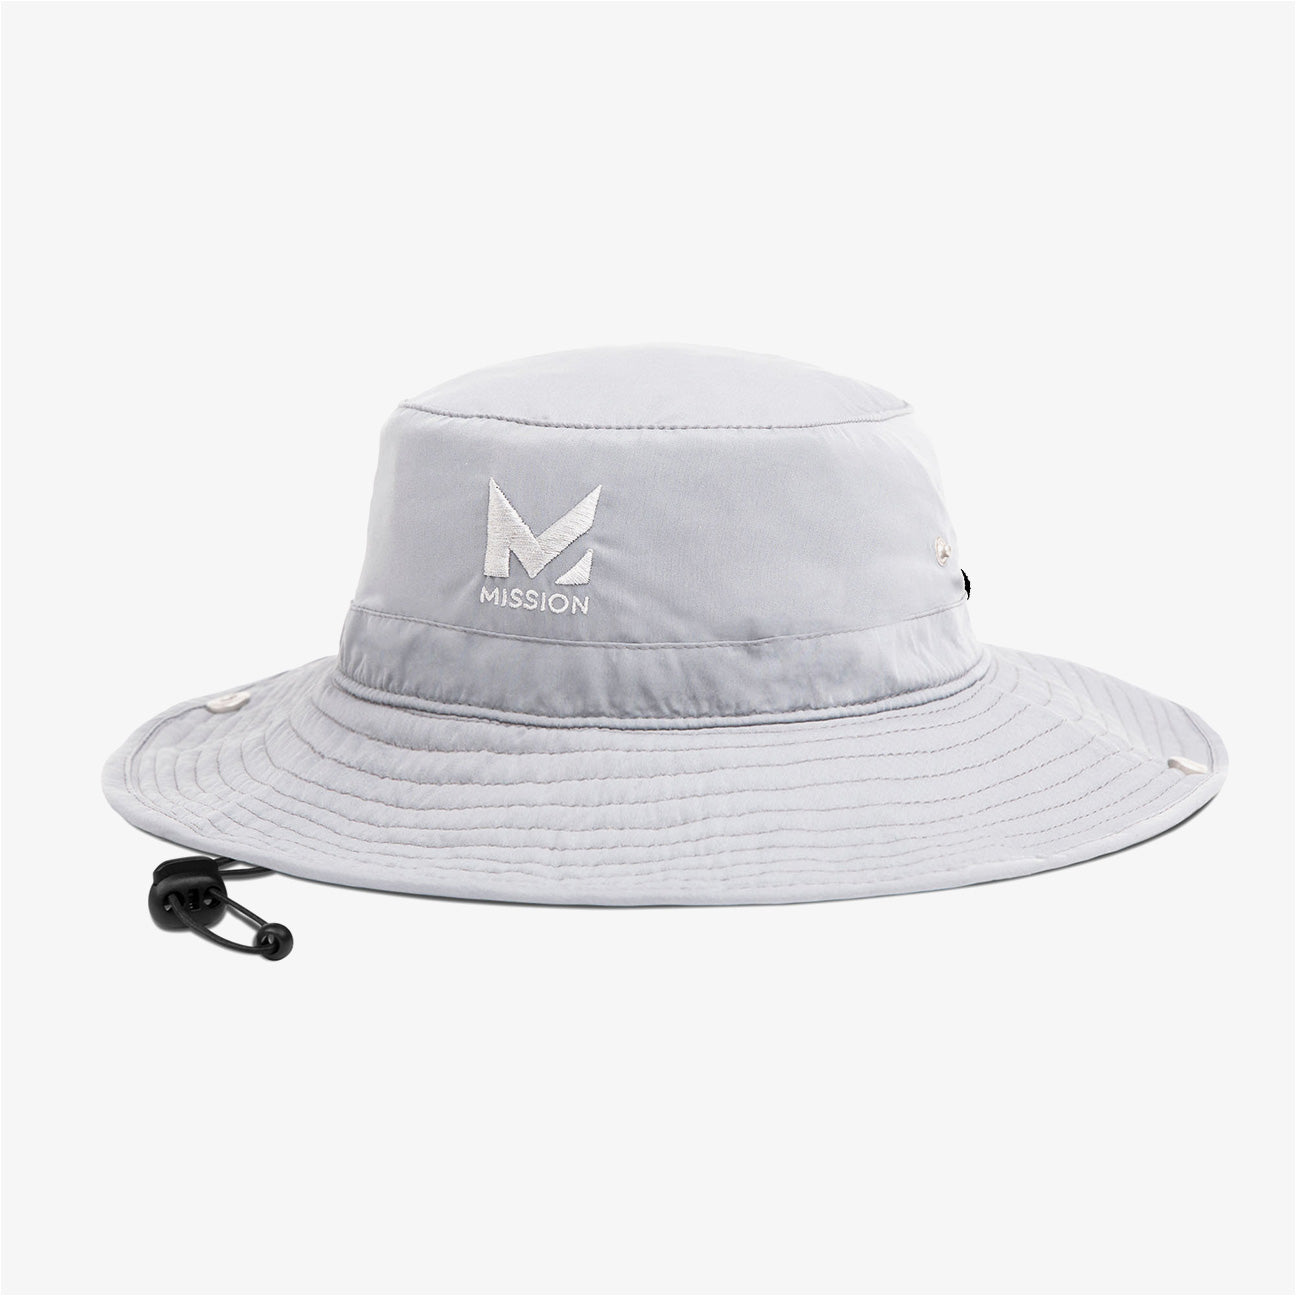 K51 Mens Wide Brim Mission Camo Bucket Hat For Outdoor Activities